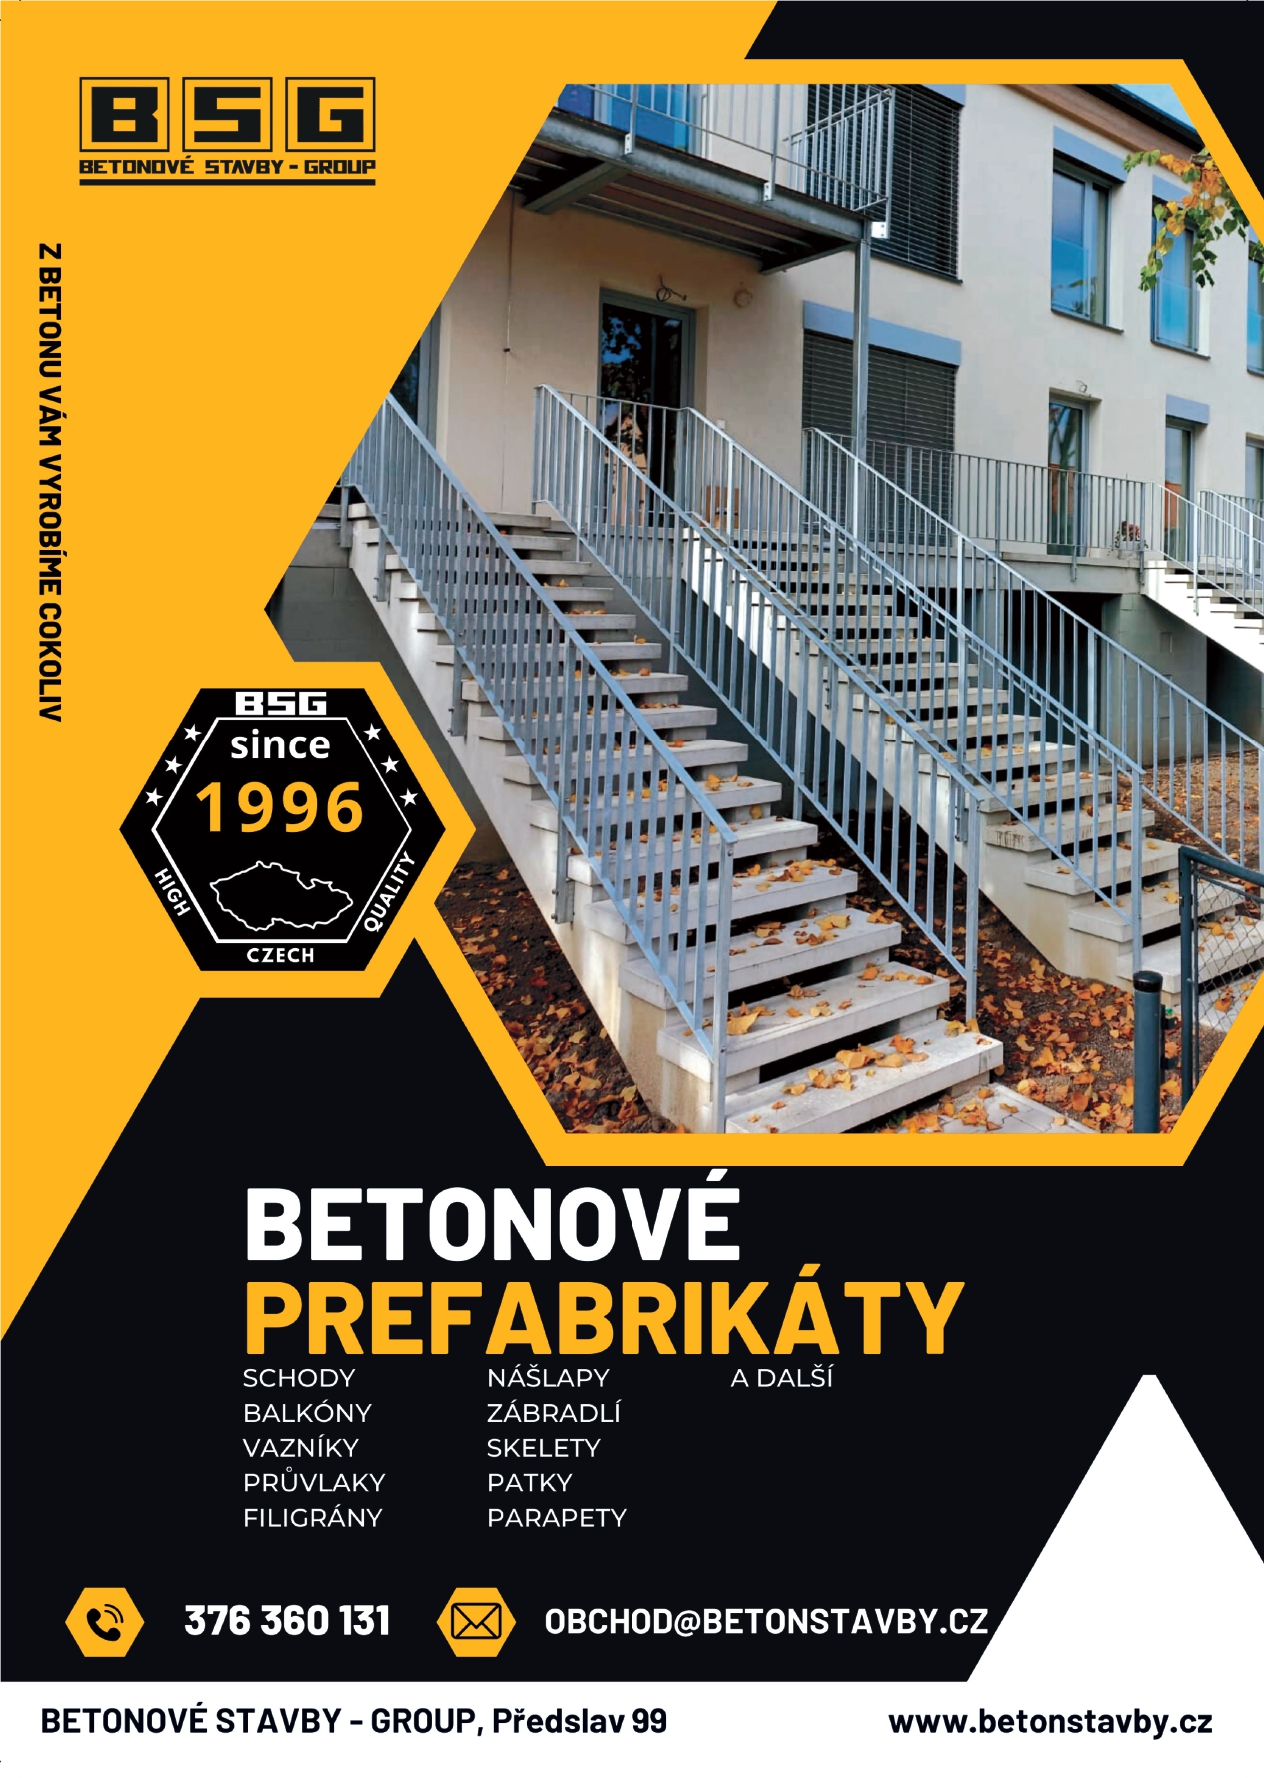 Bsg-letak-a4-betonove-prefabrikaty-tisk_page-0001